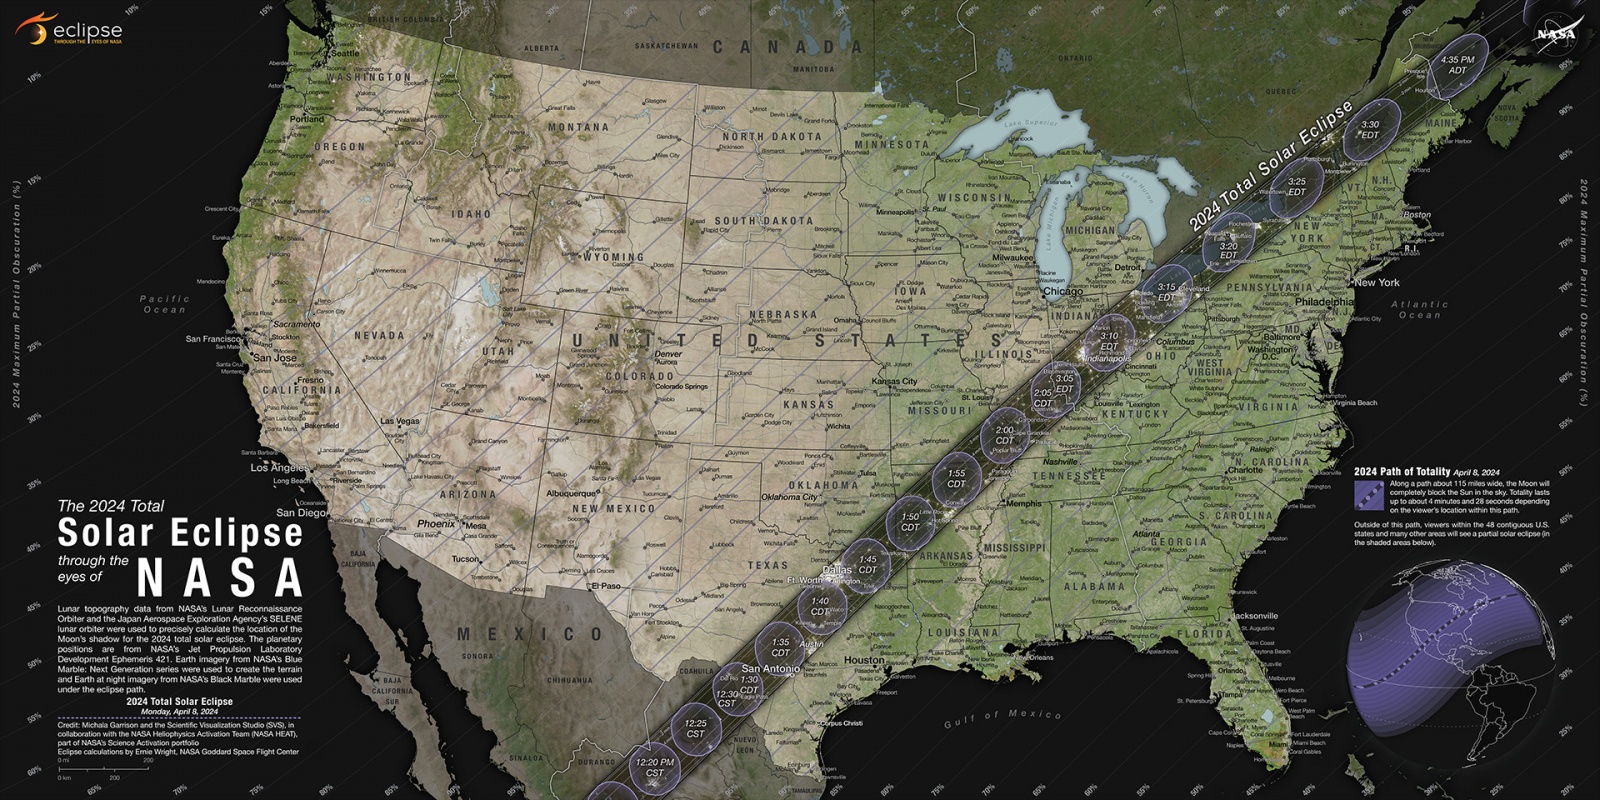 Прохождение полосы полной фазы полного солнечного затмения 8 апреля 2024 года по территории Мексики, США и Канады  